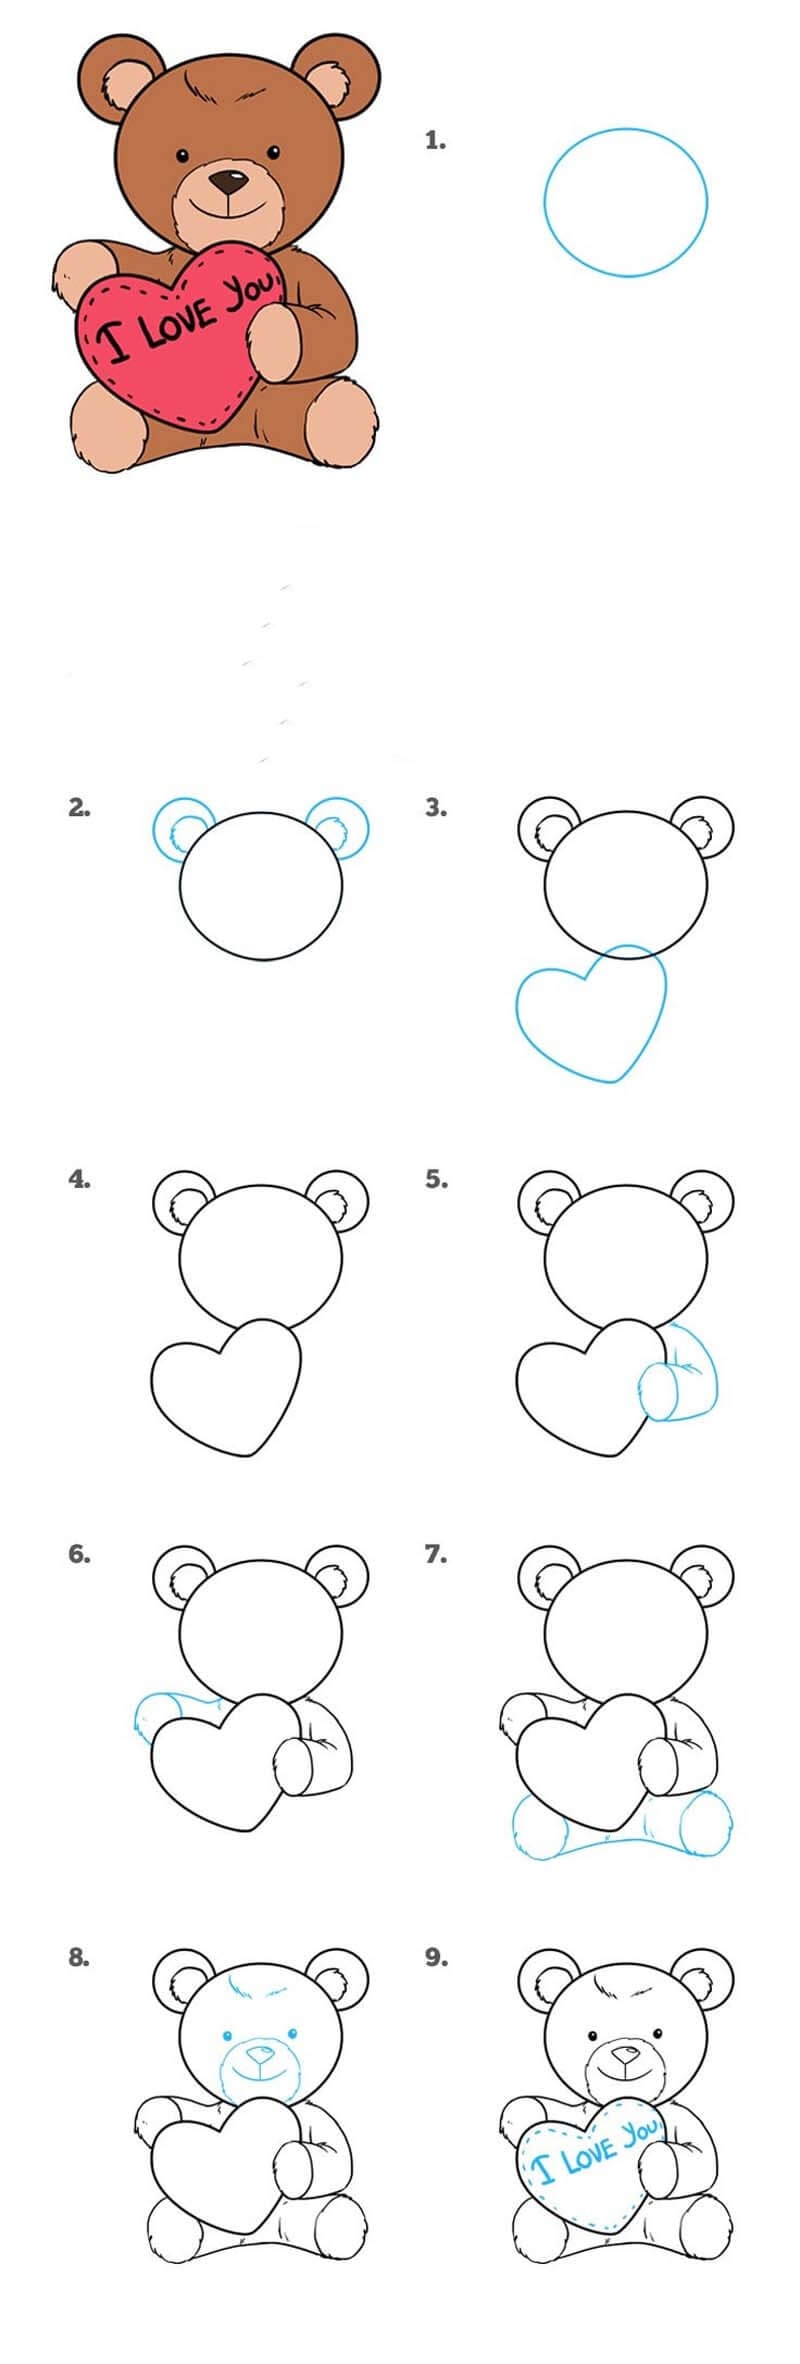 Как нарисовать медвежонка карандашом поэтапно. Для начинающих инструкция